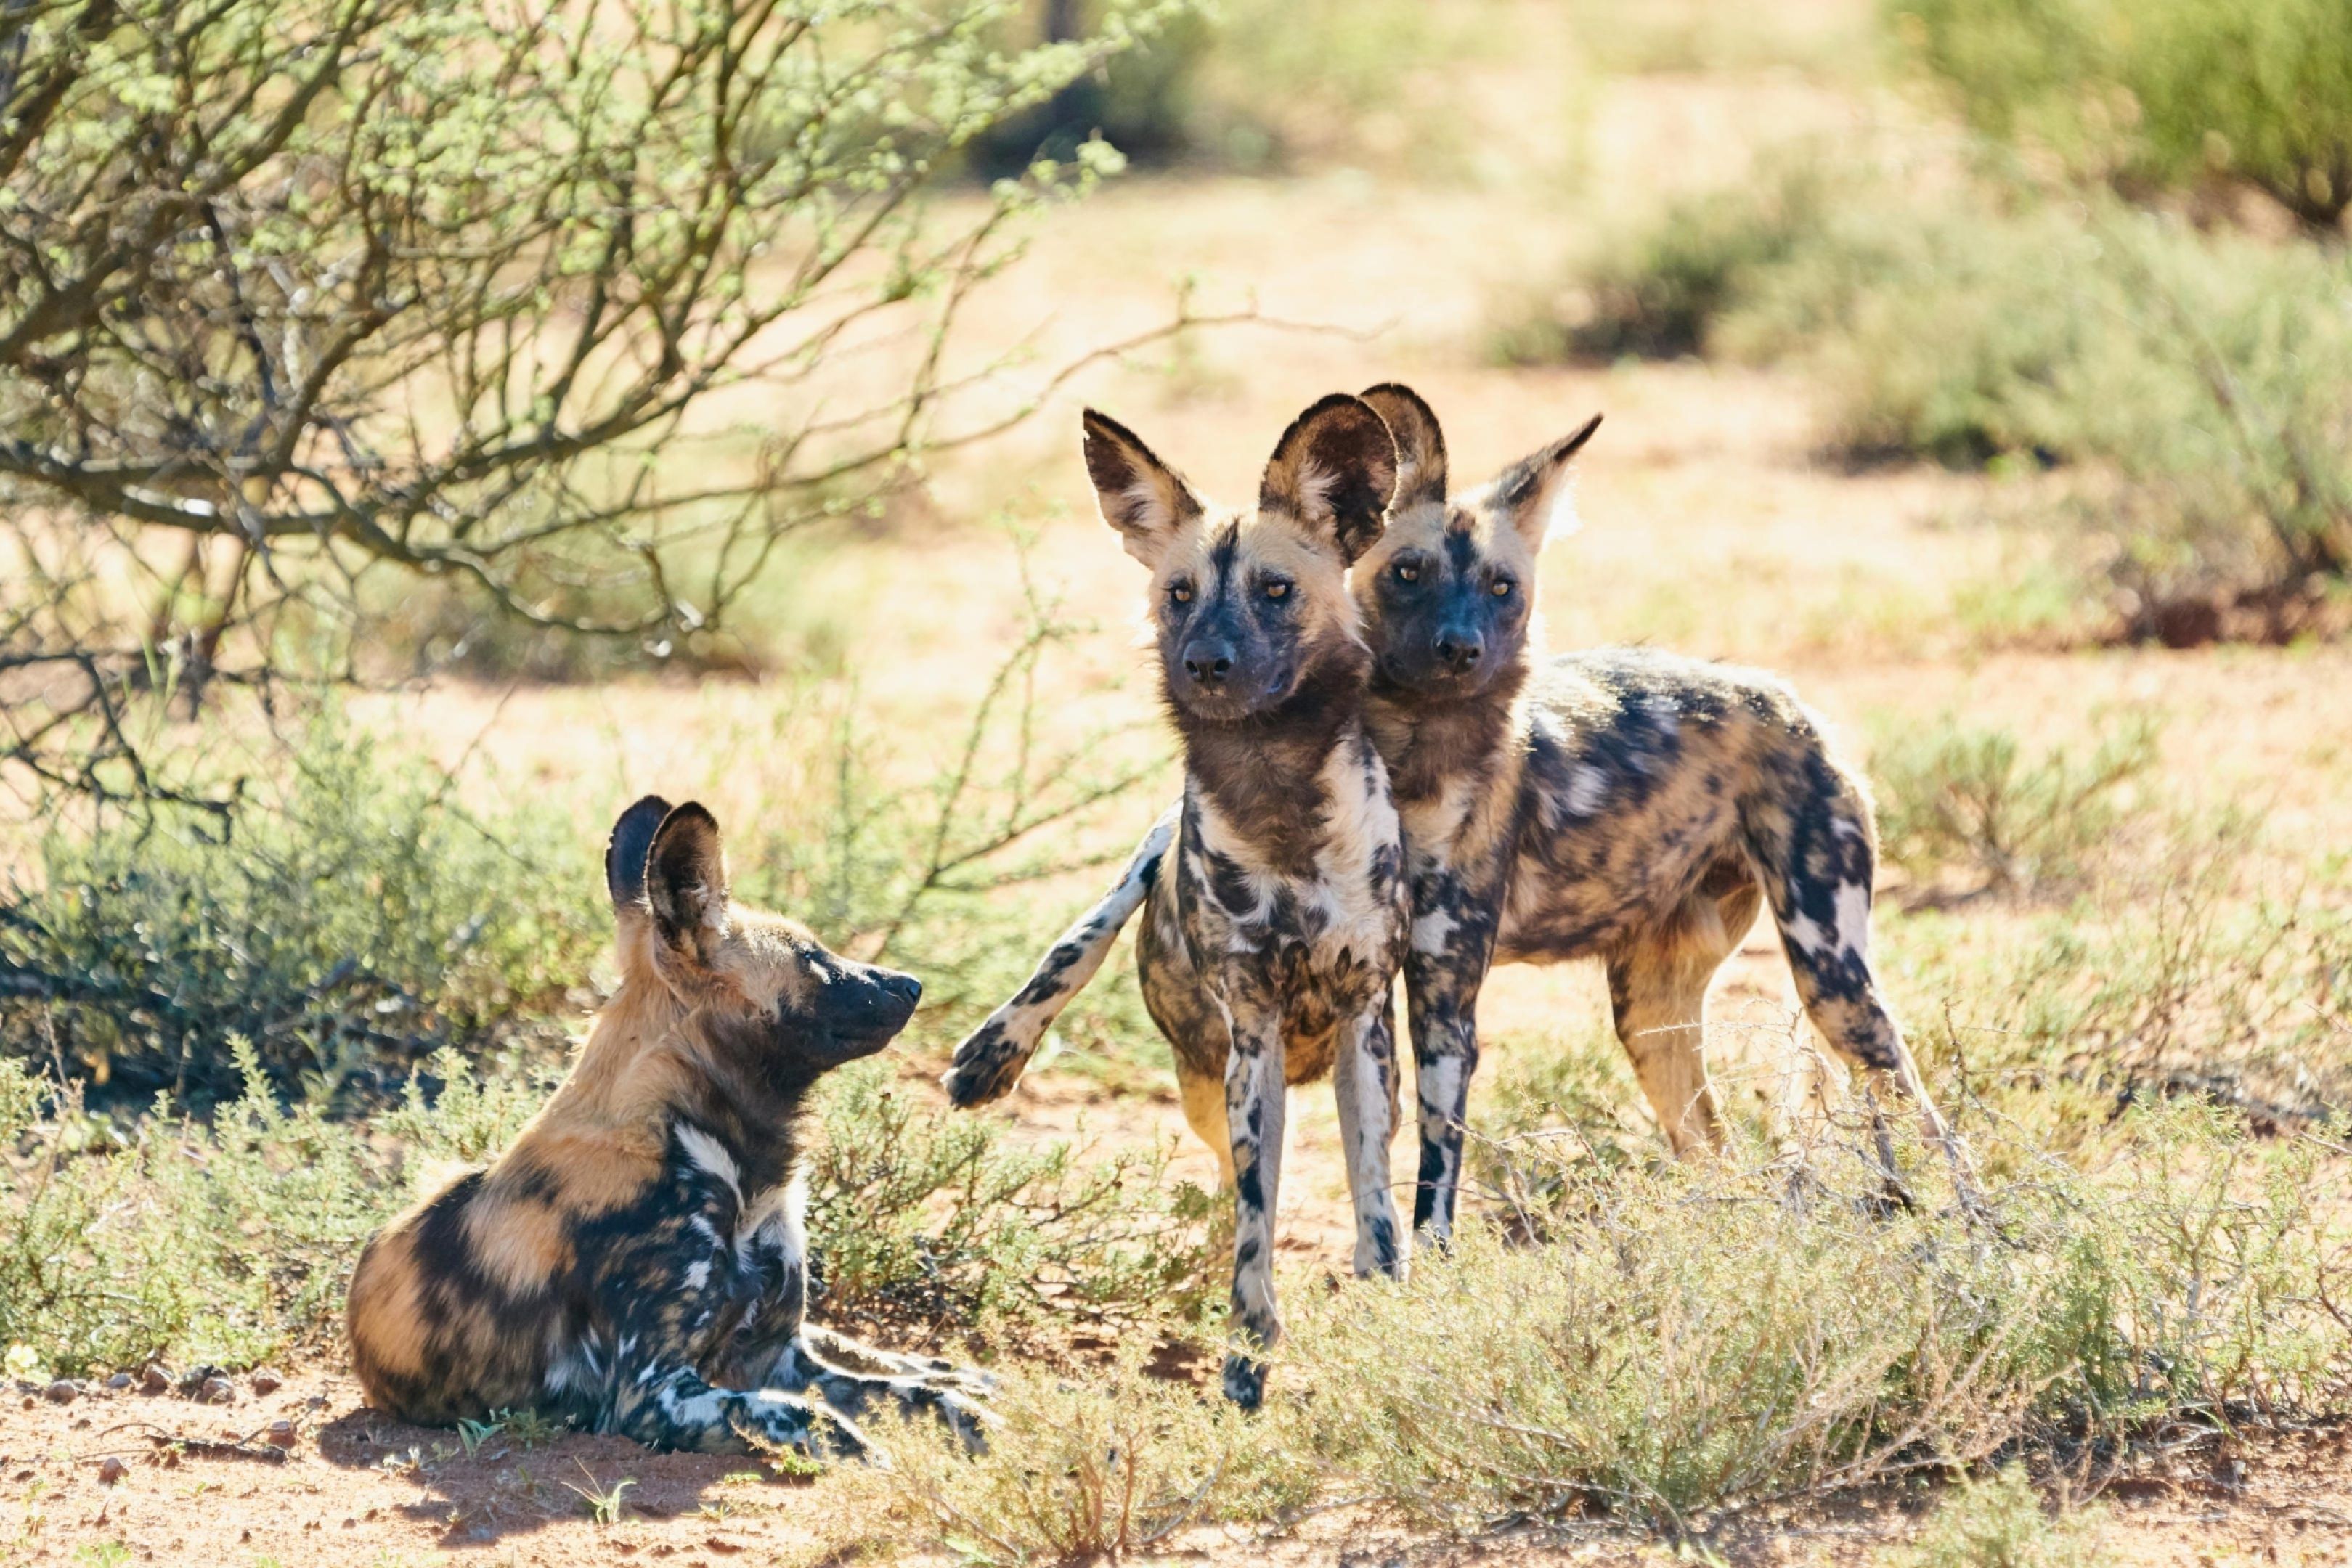 Wild dogs in the Tswalu Kalahari Reserve.